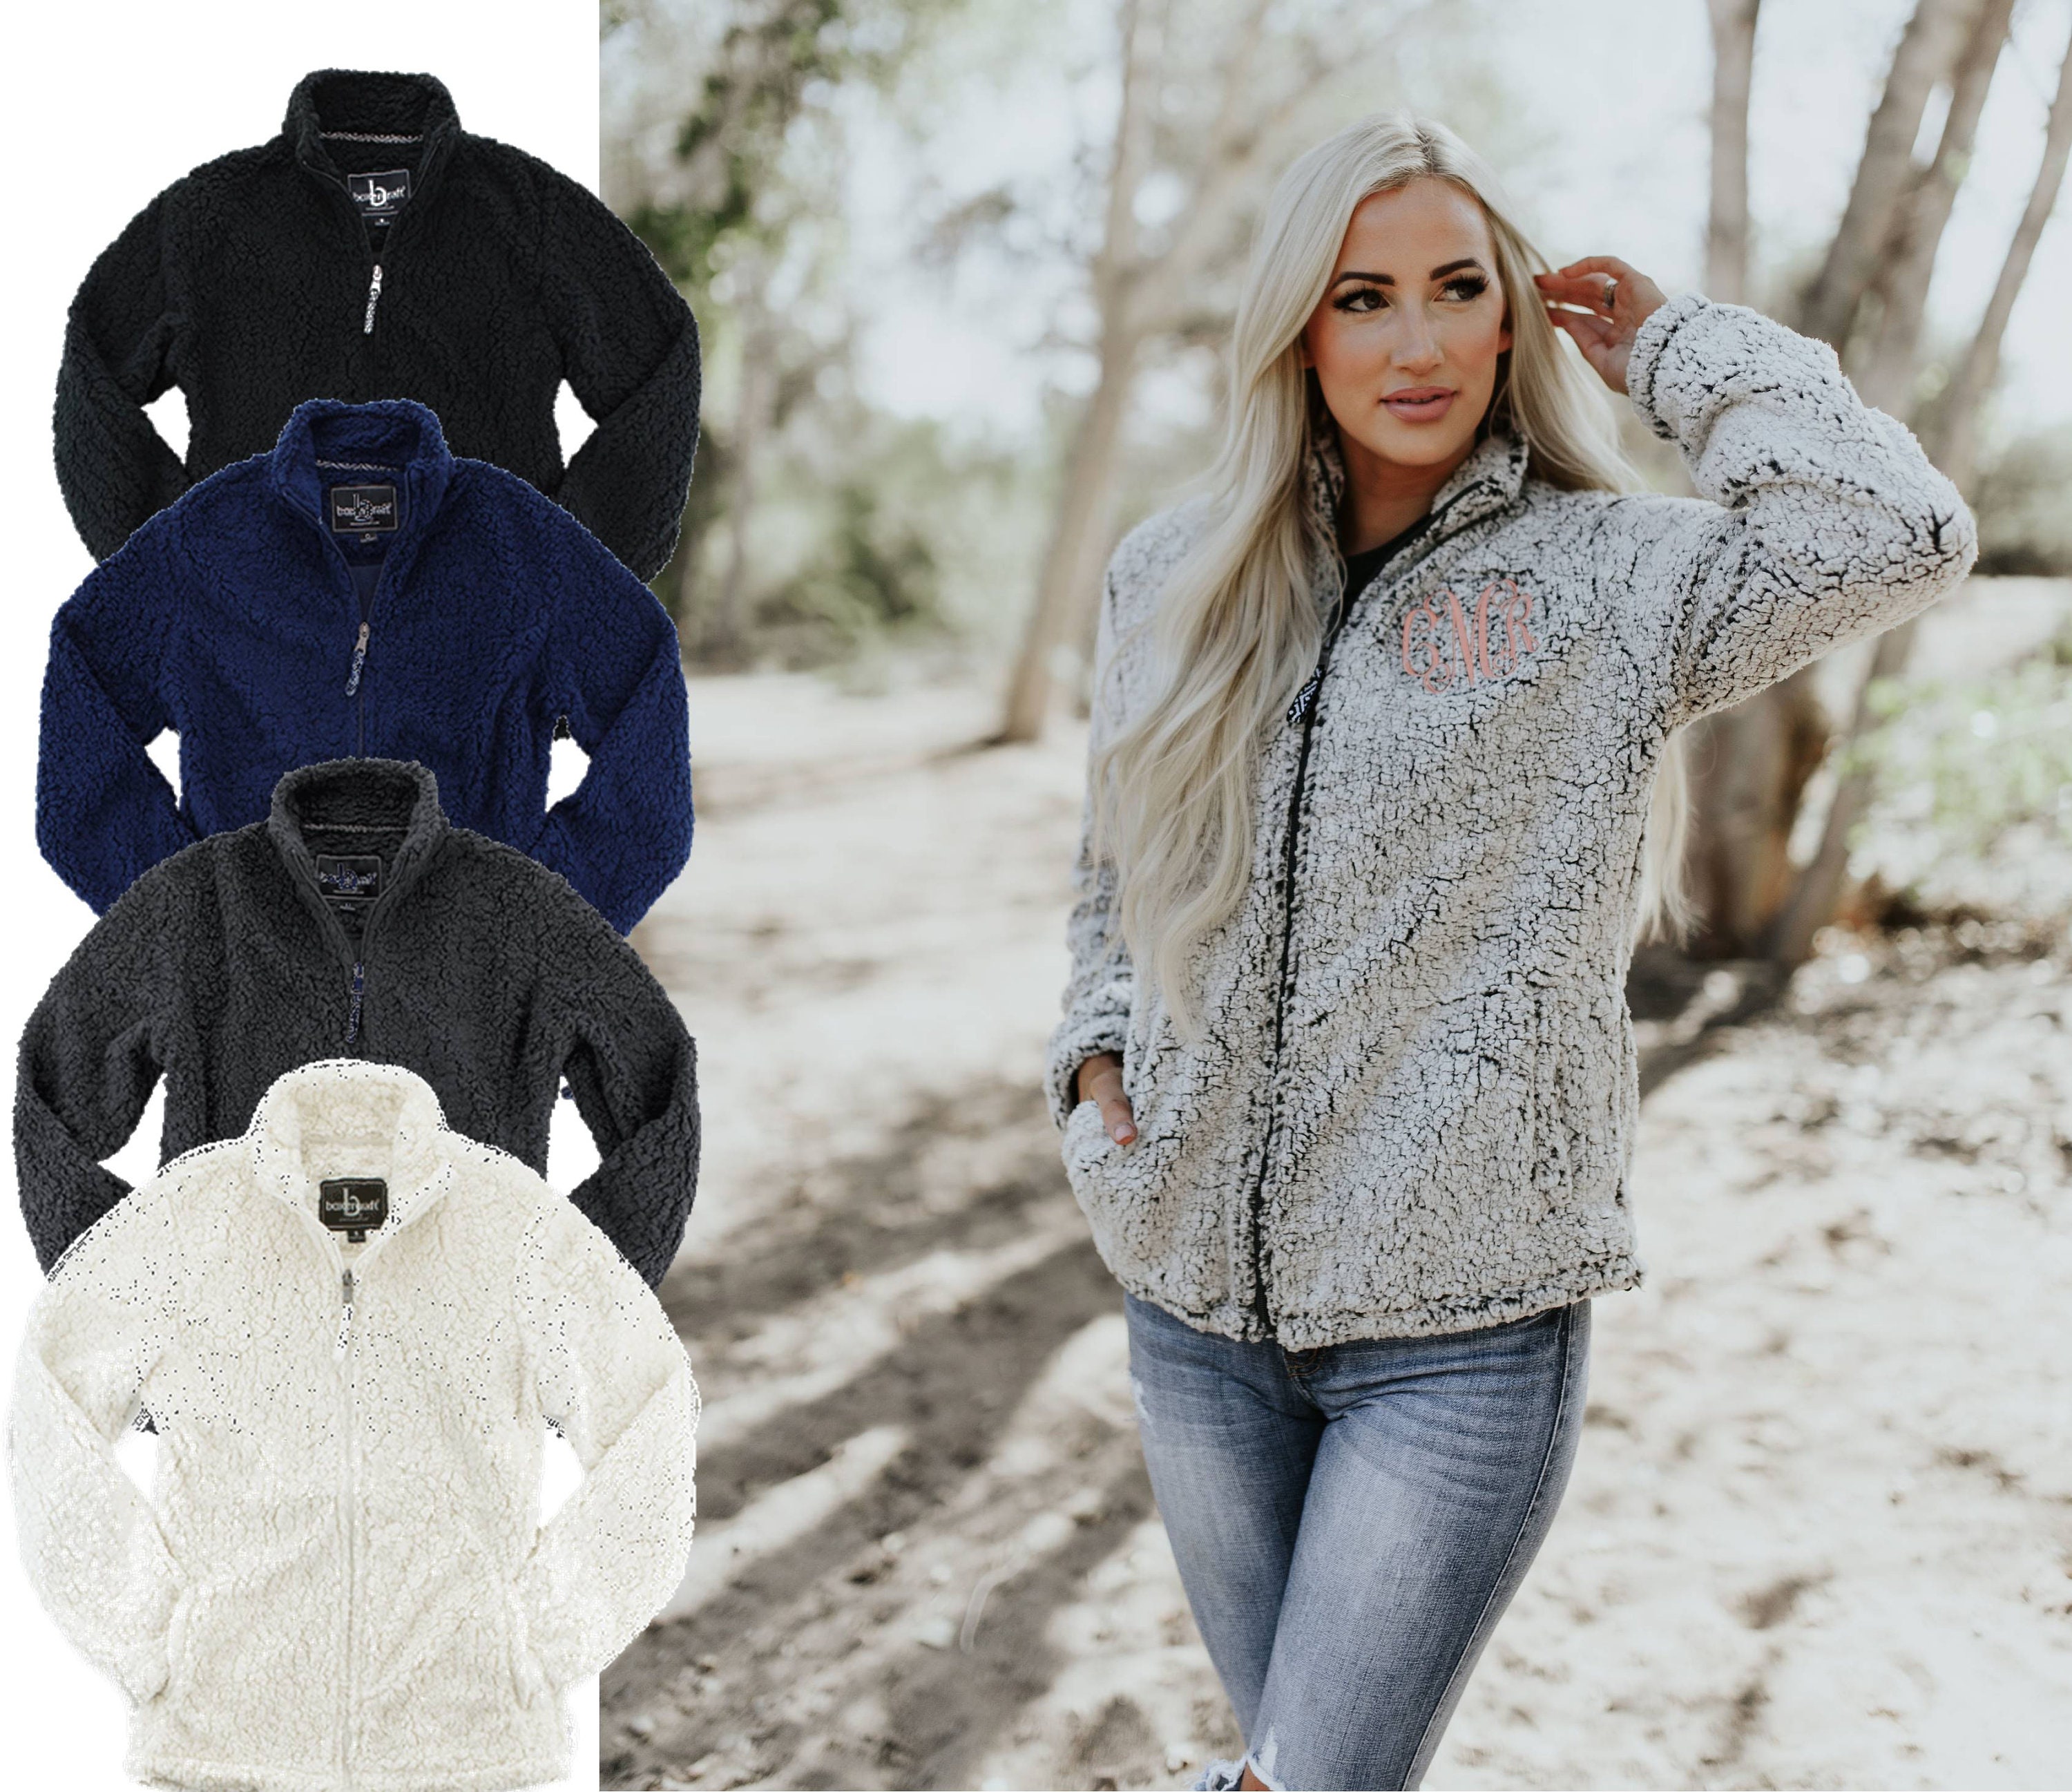 Monogram Sherpa Sweatshirt - Full Zip – Carly's Customs